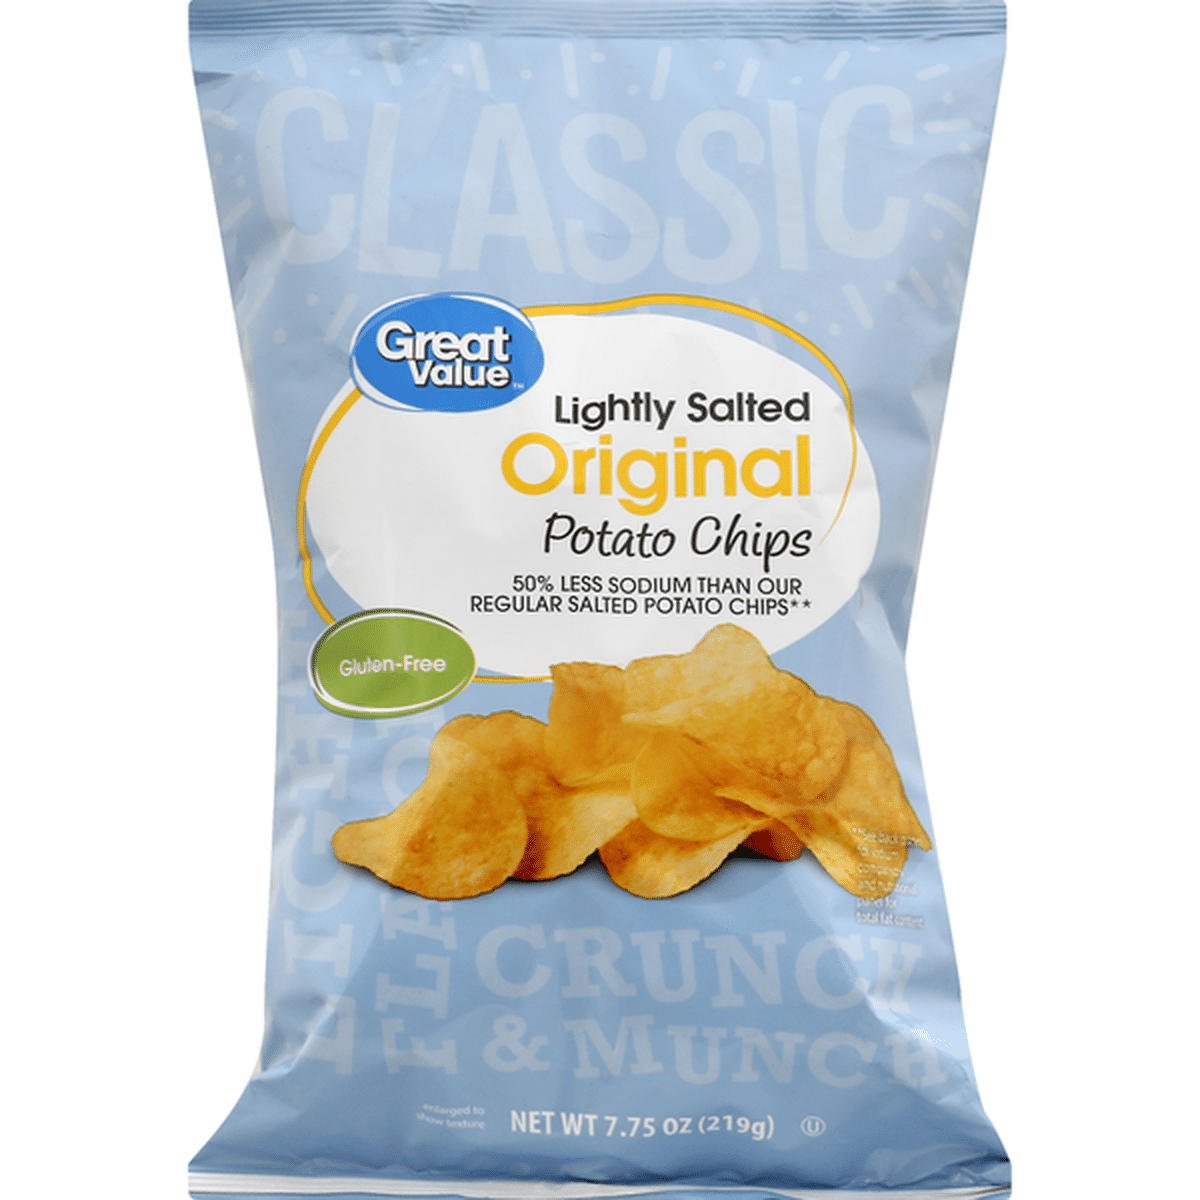 Great Value Regular Potato Chips, 200 g